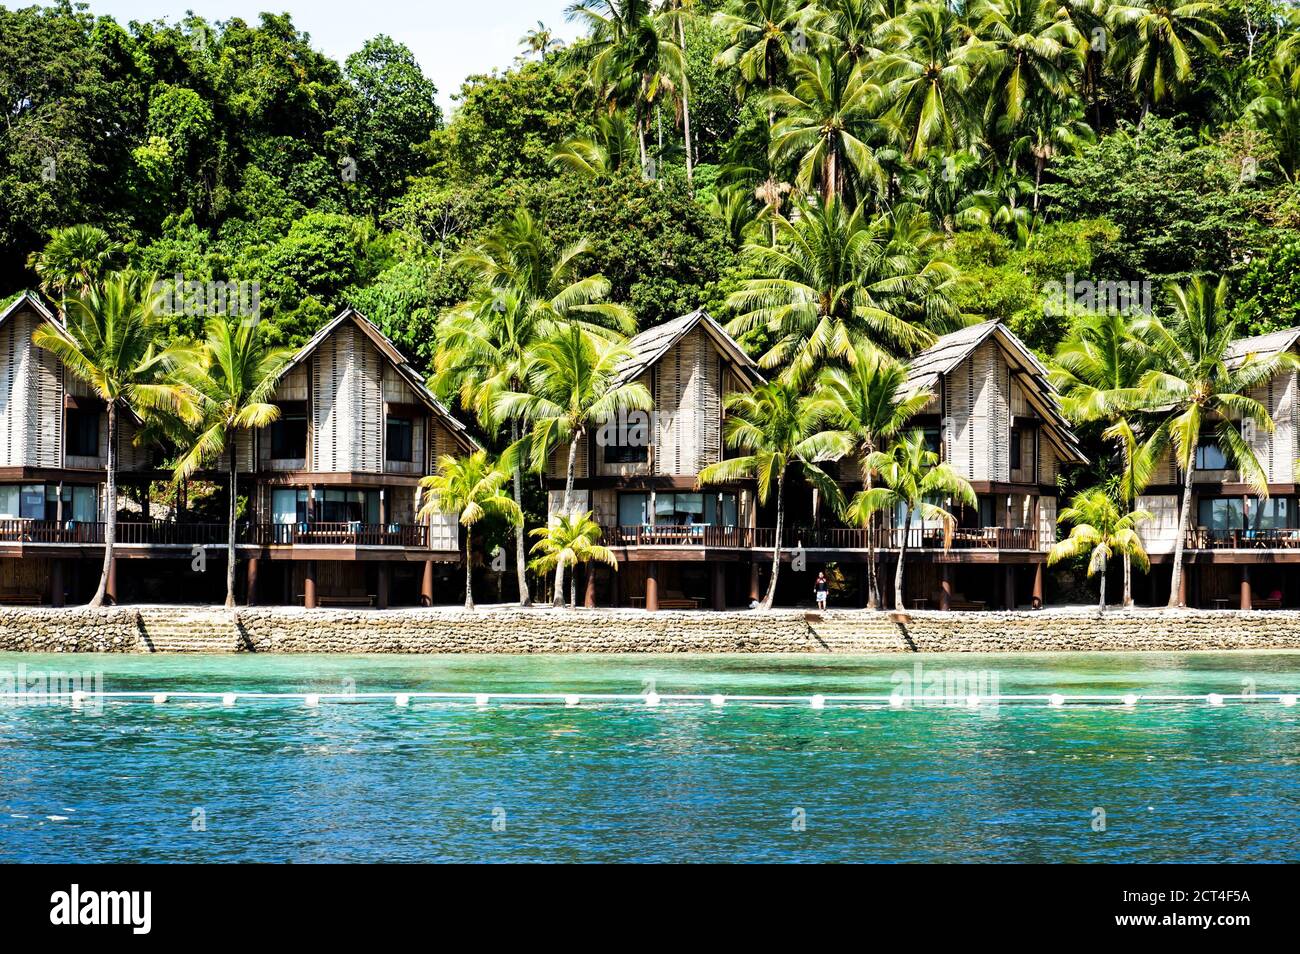 Maisons de vacances vernaculaires en bord de mer sur une île Banque D'Images